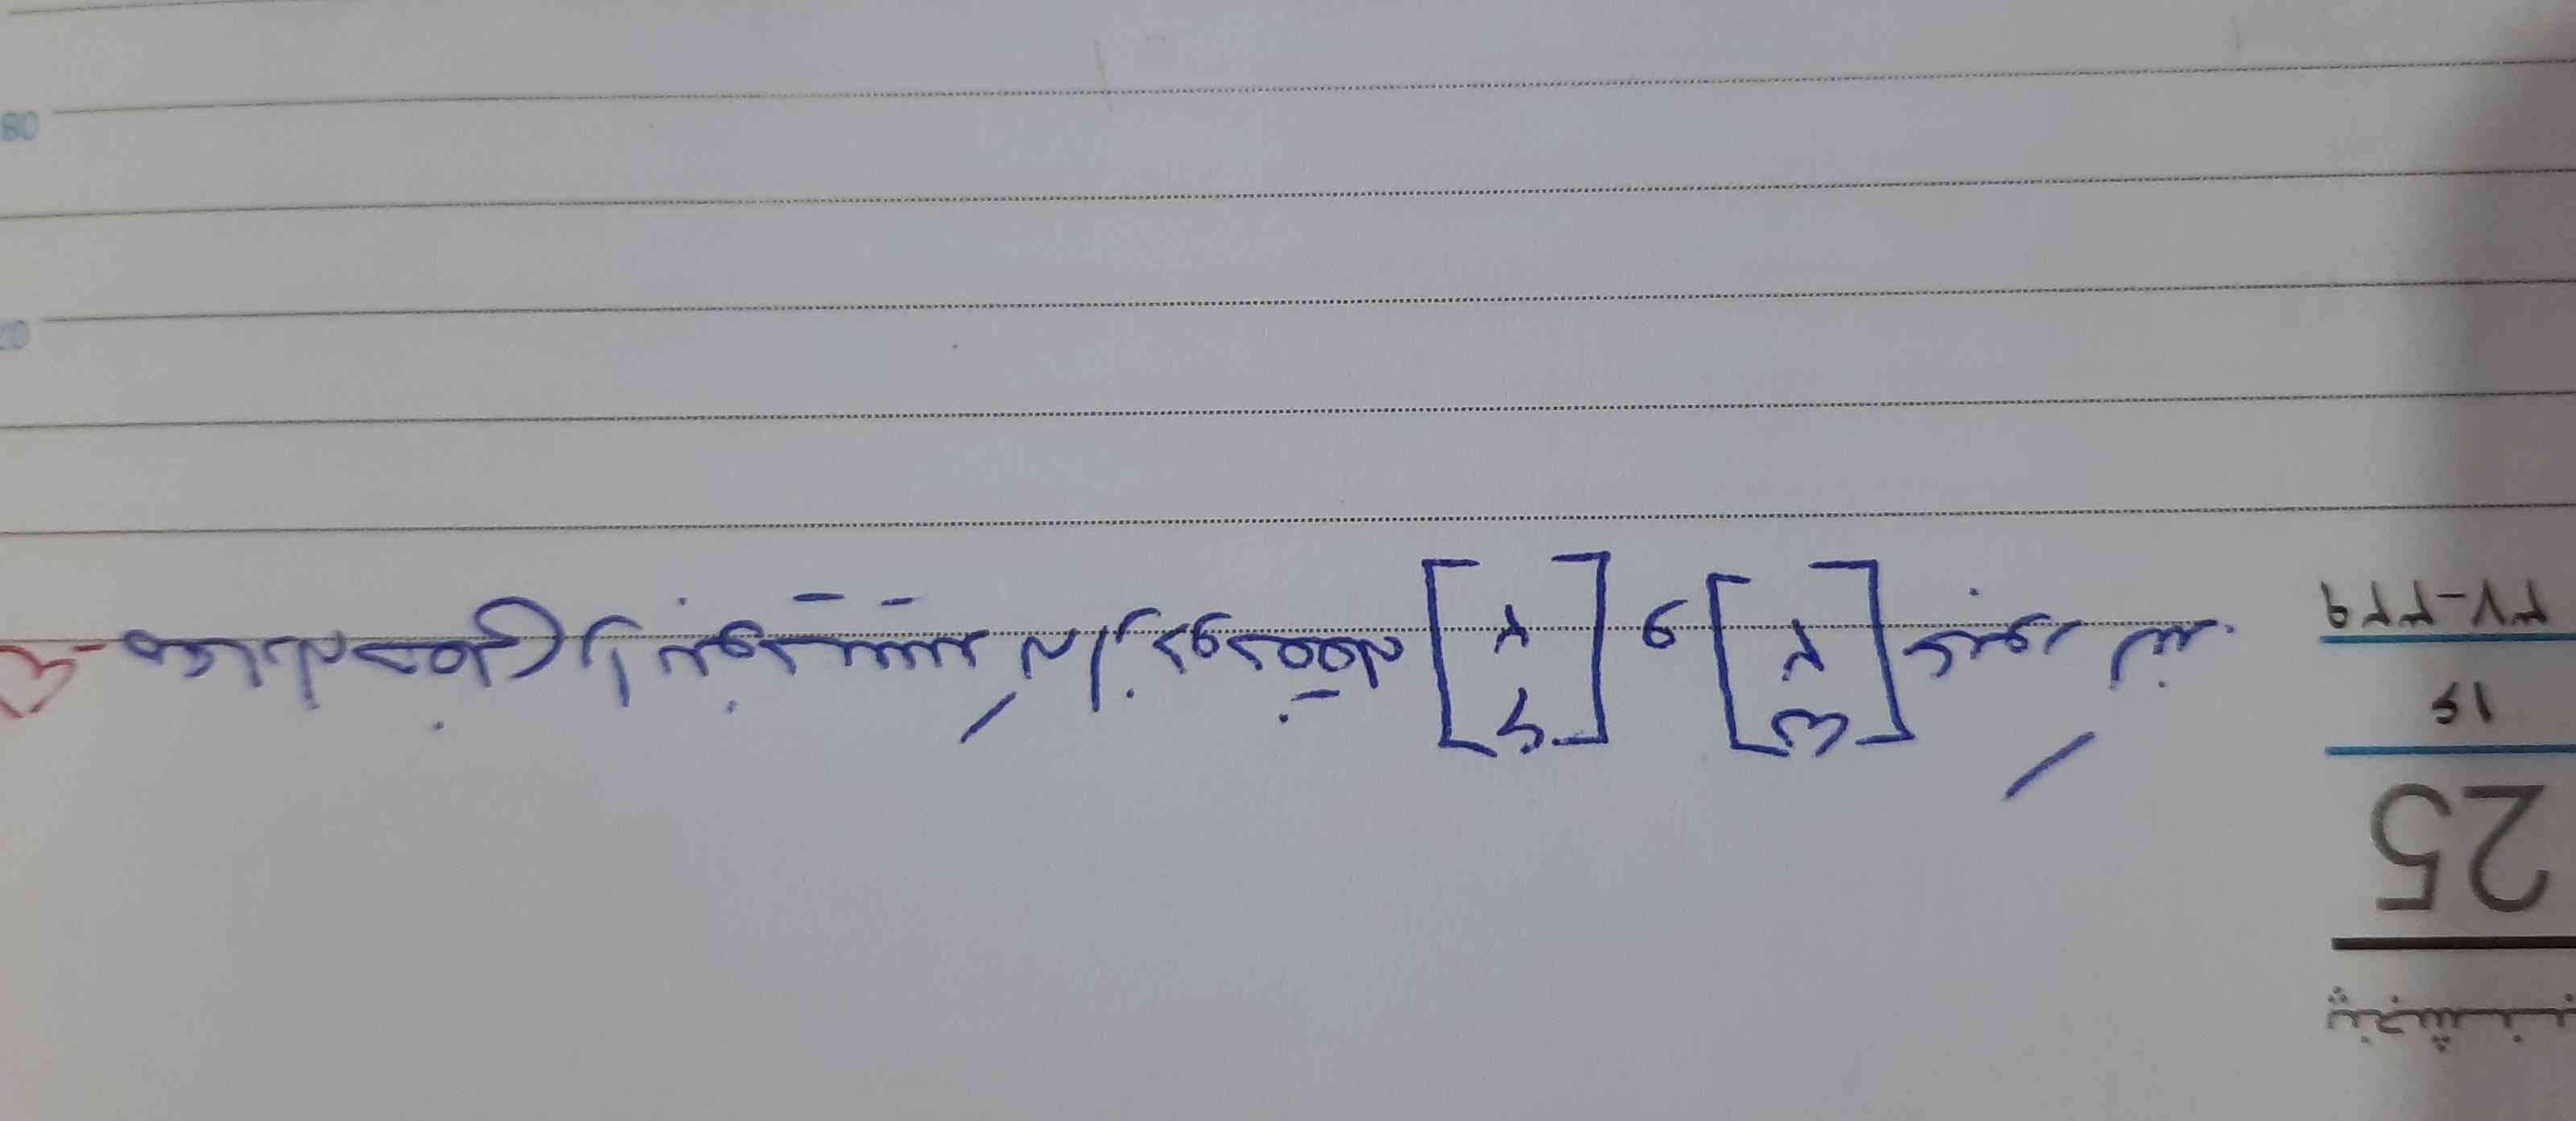 معادله خطی را بنویسید ک از دو نقطه ی  6و۲


و ۵و۲ عبور کند 